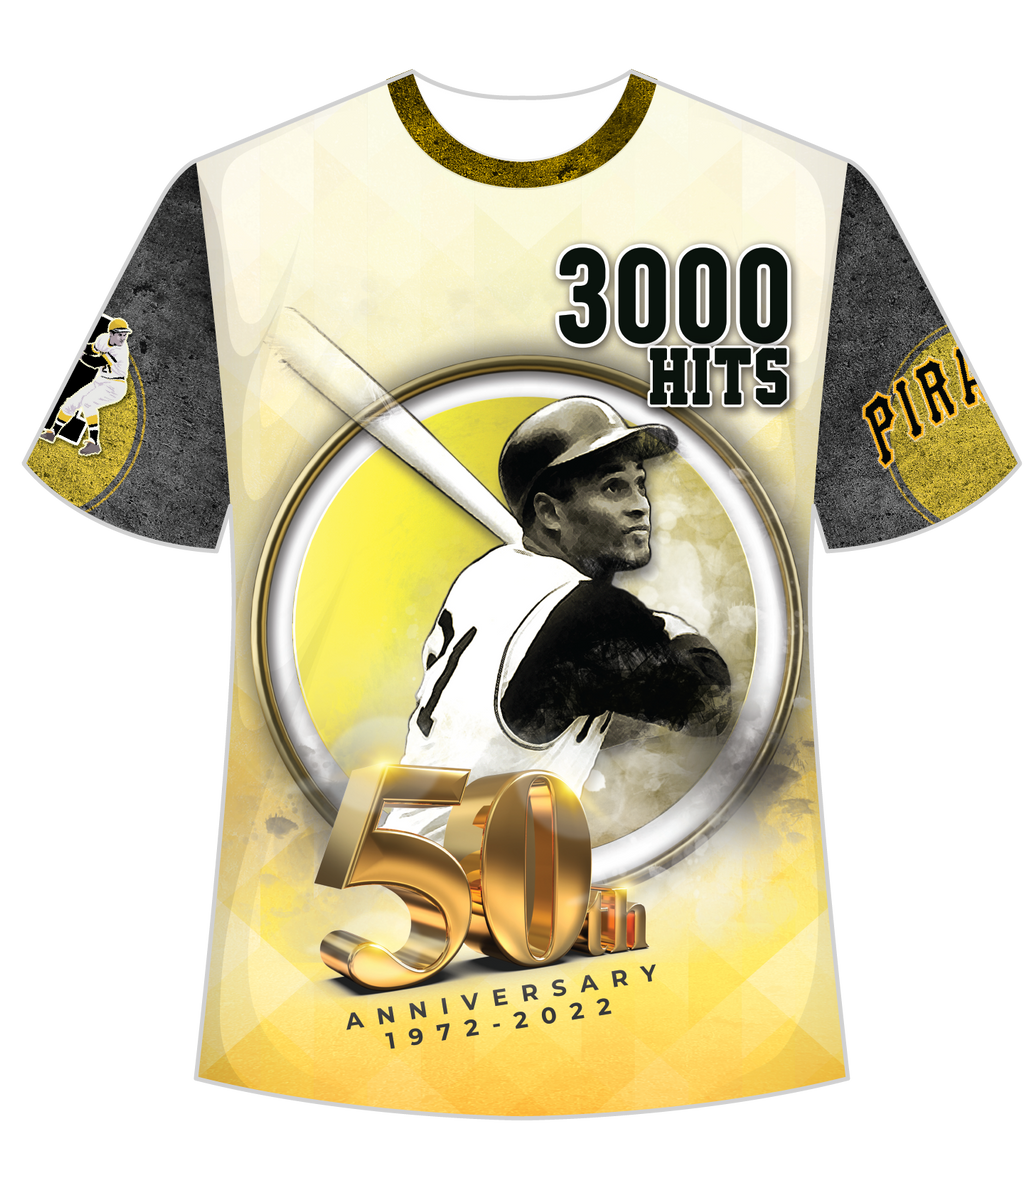 Pieza única! Camisa limitada conmemorativa del 50 Aniversario del hit 3,000  de Roberto Clemente